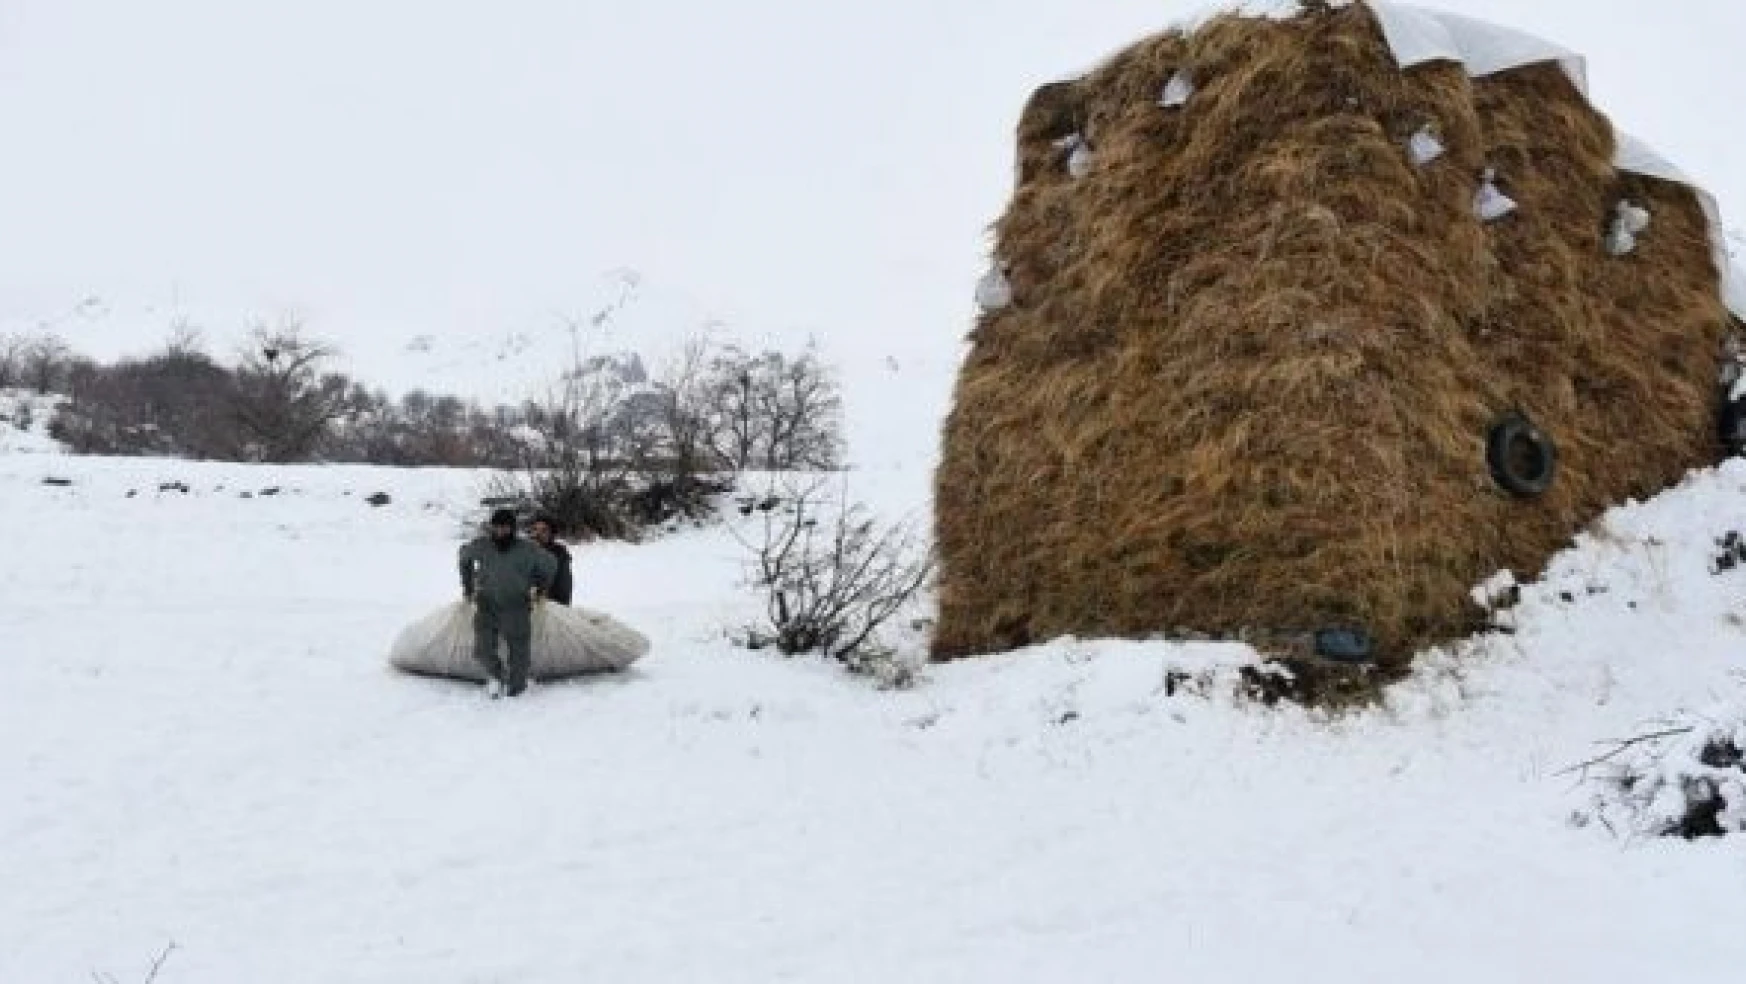 Hakkari'deki besicilerin kış şartlarıyla mücadelesi başladı